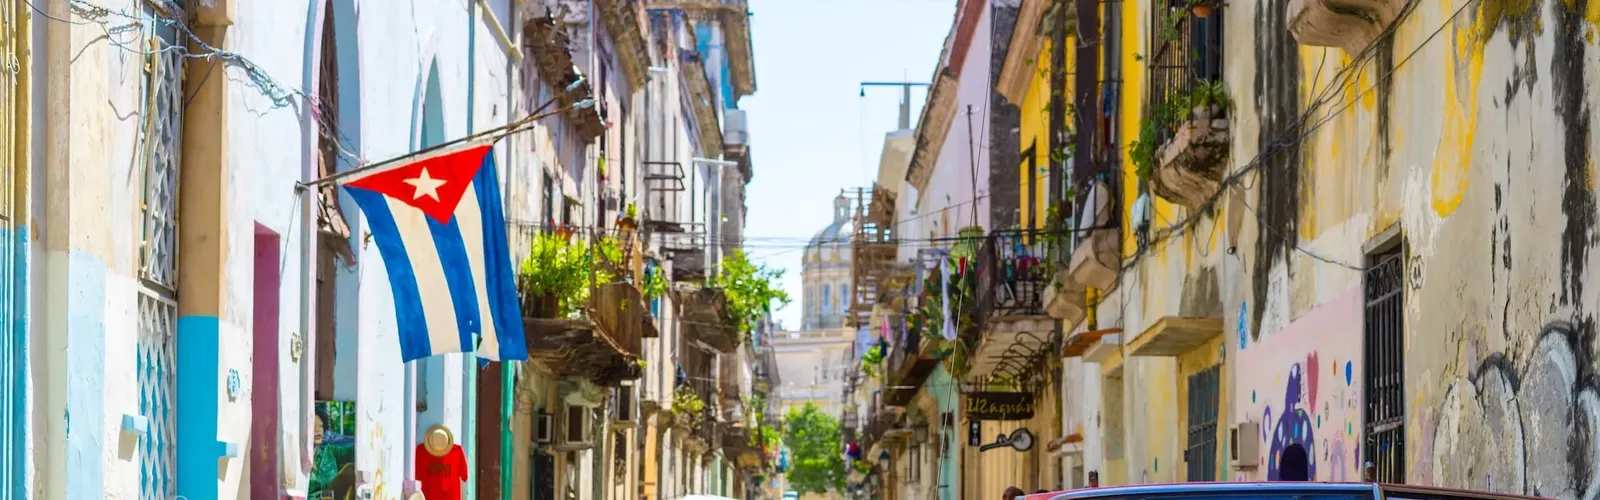 Santiago de Cuba Region | Cuba - Rated 2.8